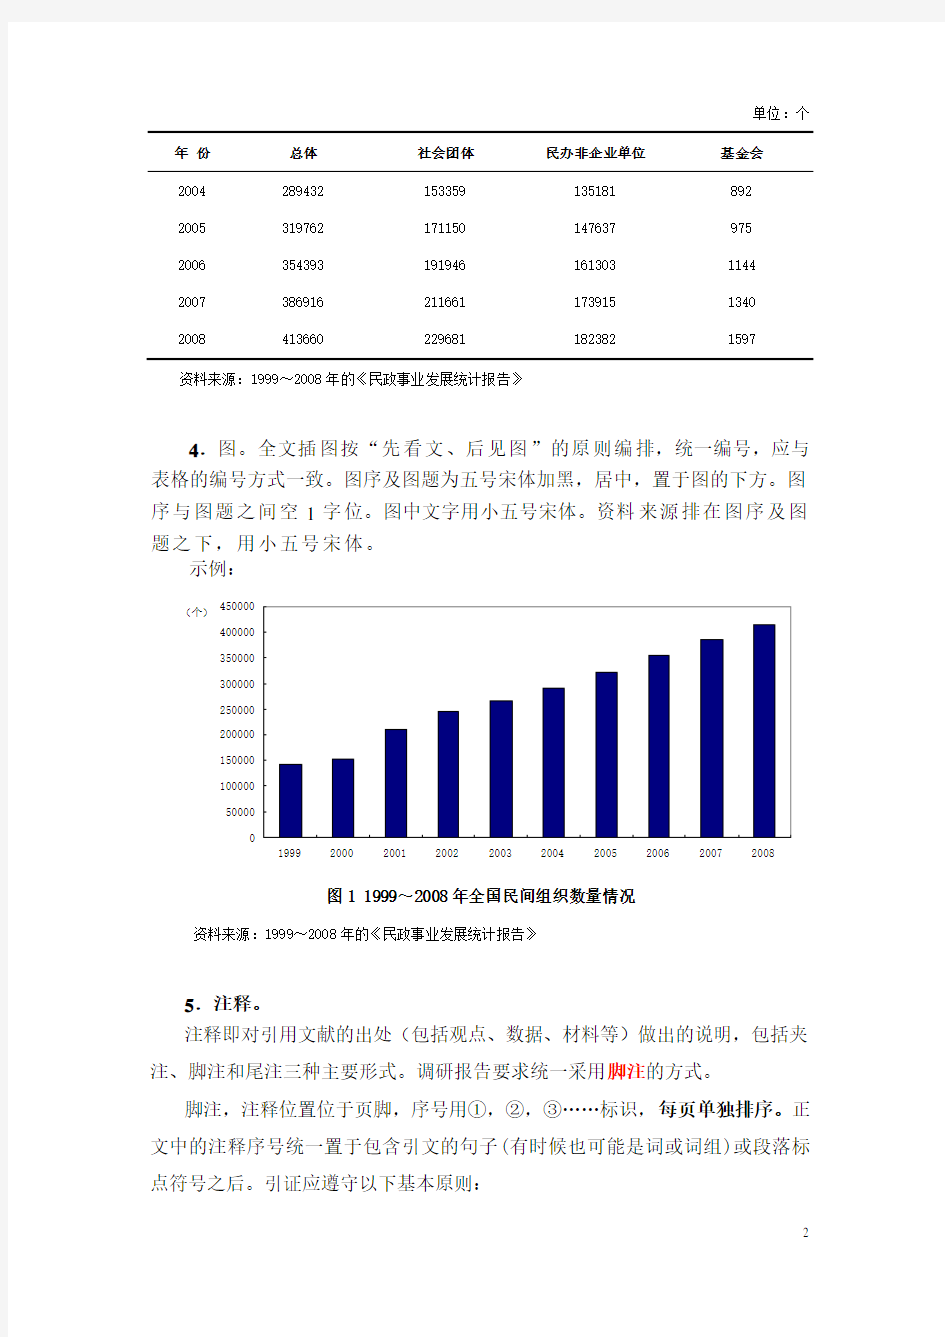 中国科技大学调查报告格式规范及范例2